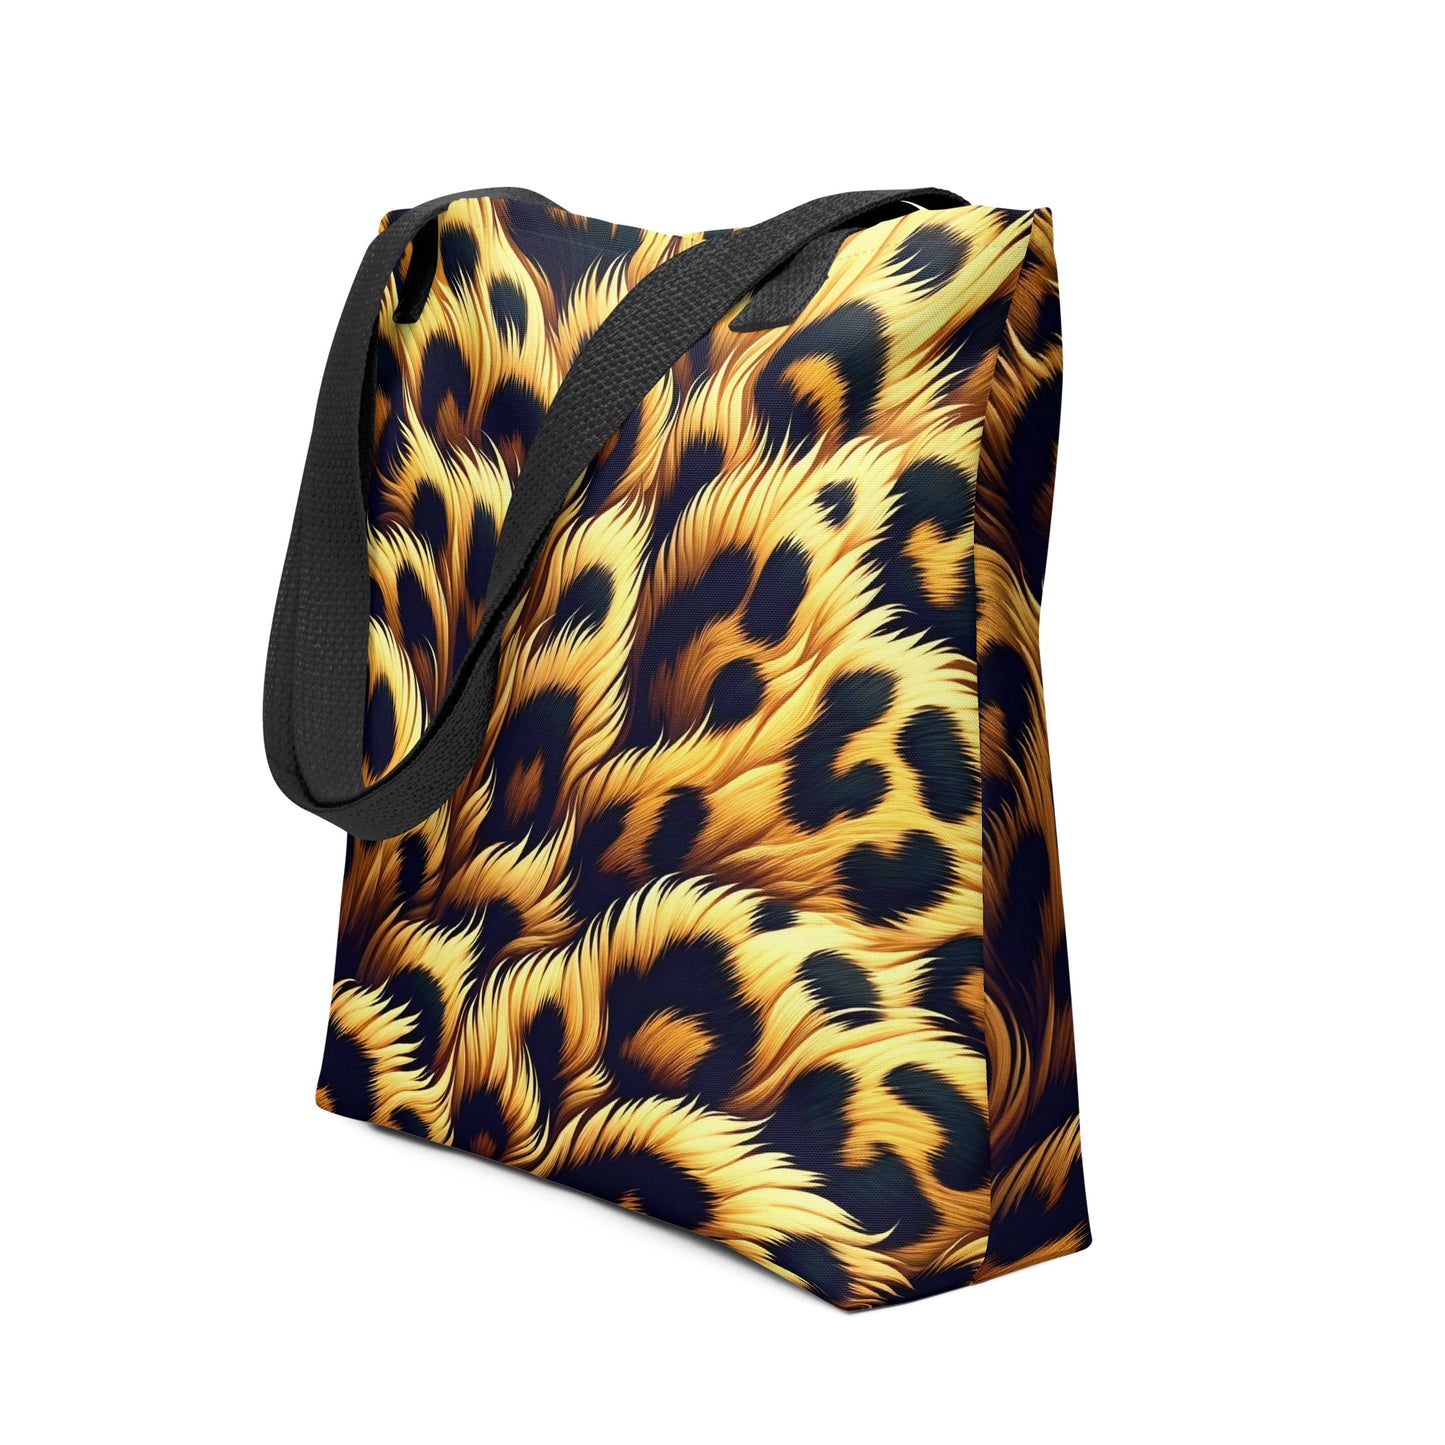 Cheetah Print | Tote Bag